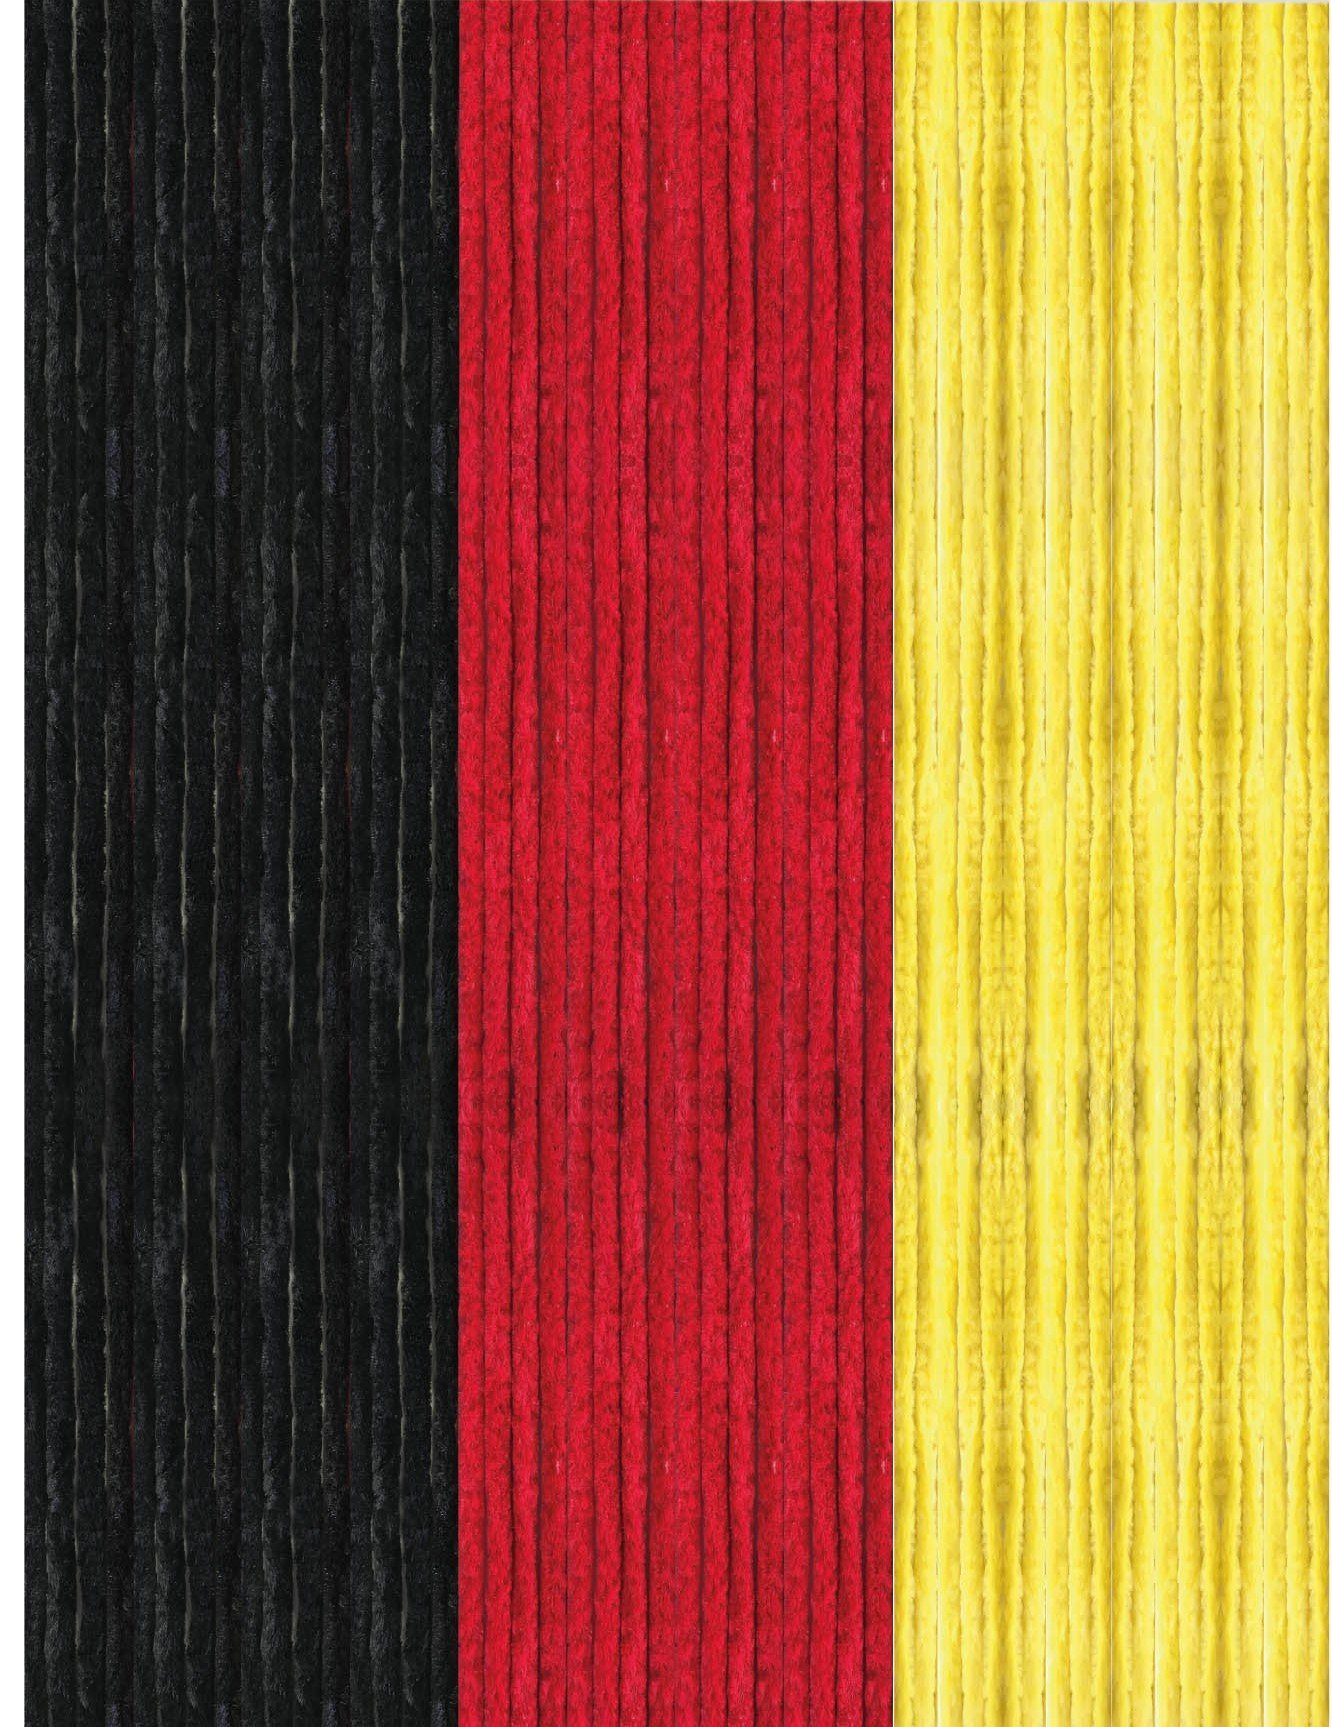 Türvorhang Flauschi, Arsvita, Ösen (1 St), Flauschvorhang 160x185 cm in Unistreifen schwarz - rot - gelb, viele Farben Schwarz-Rot-Gold